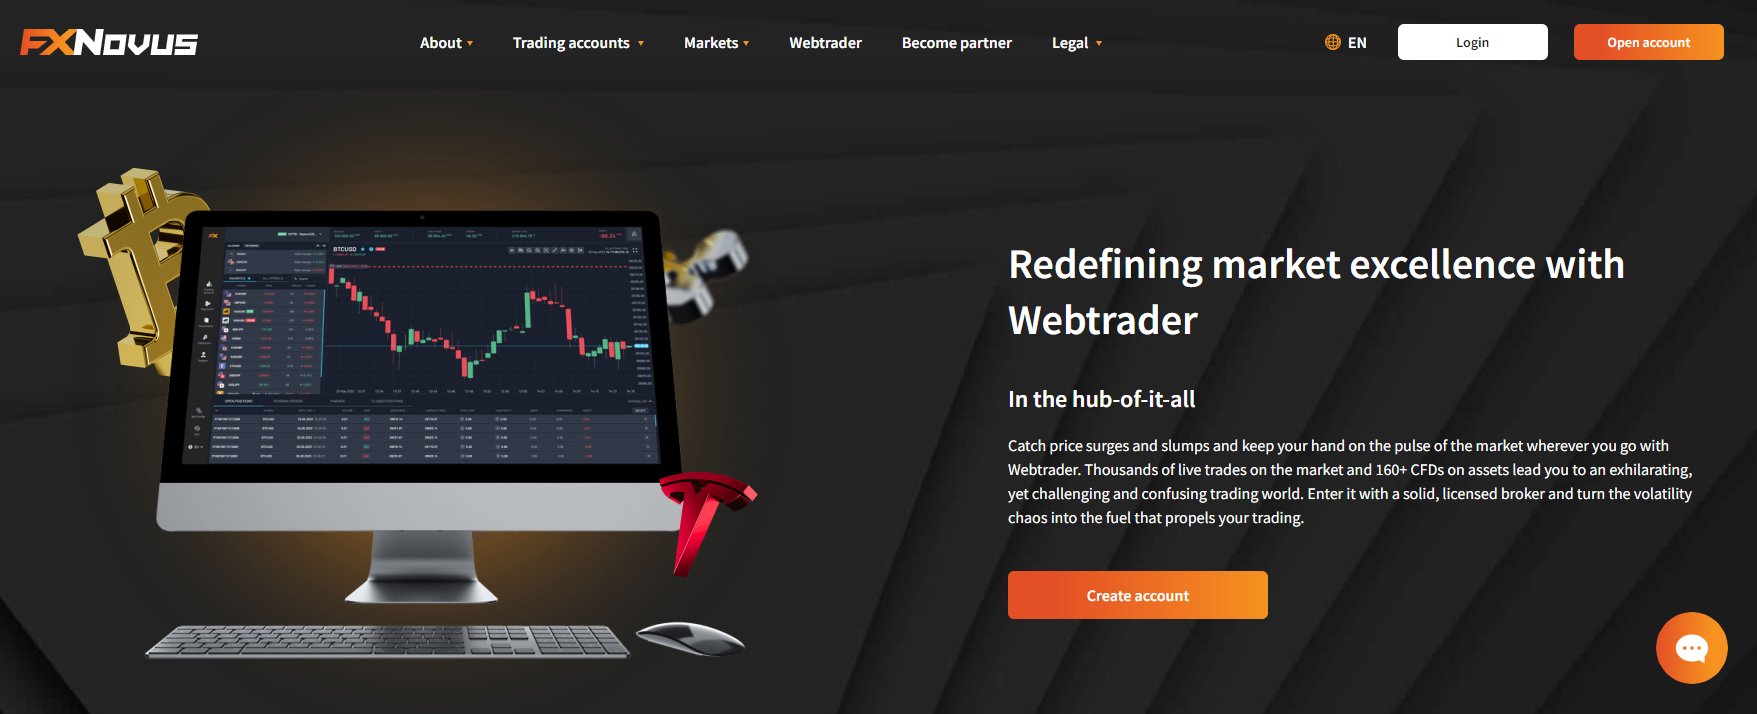 Página do FXNovus WebTrader mostrando gráficos, indicadores e ferramentas de trading